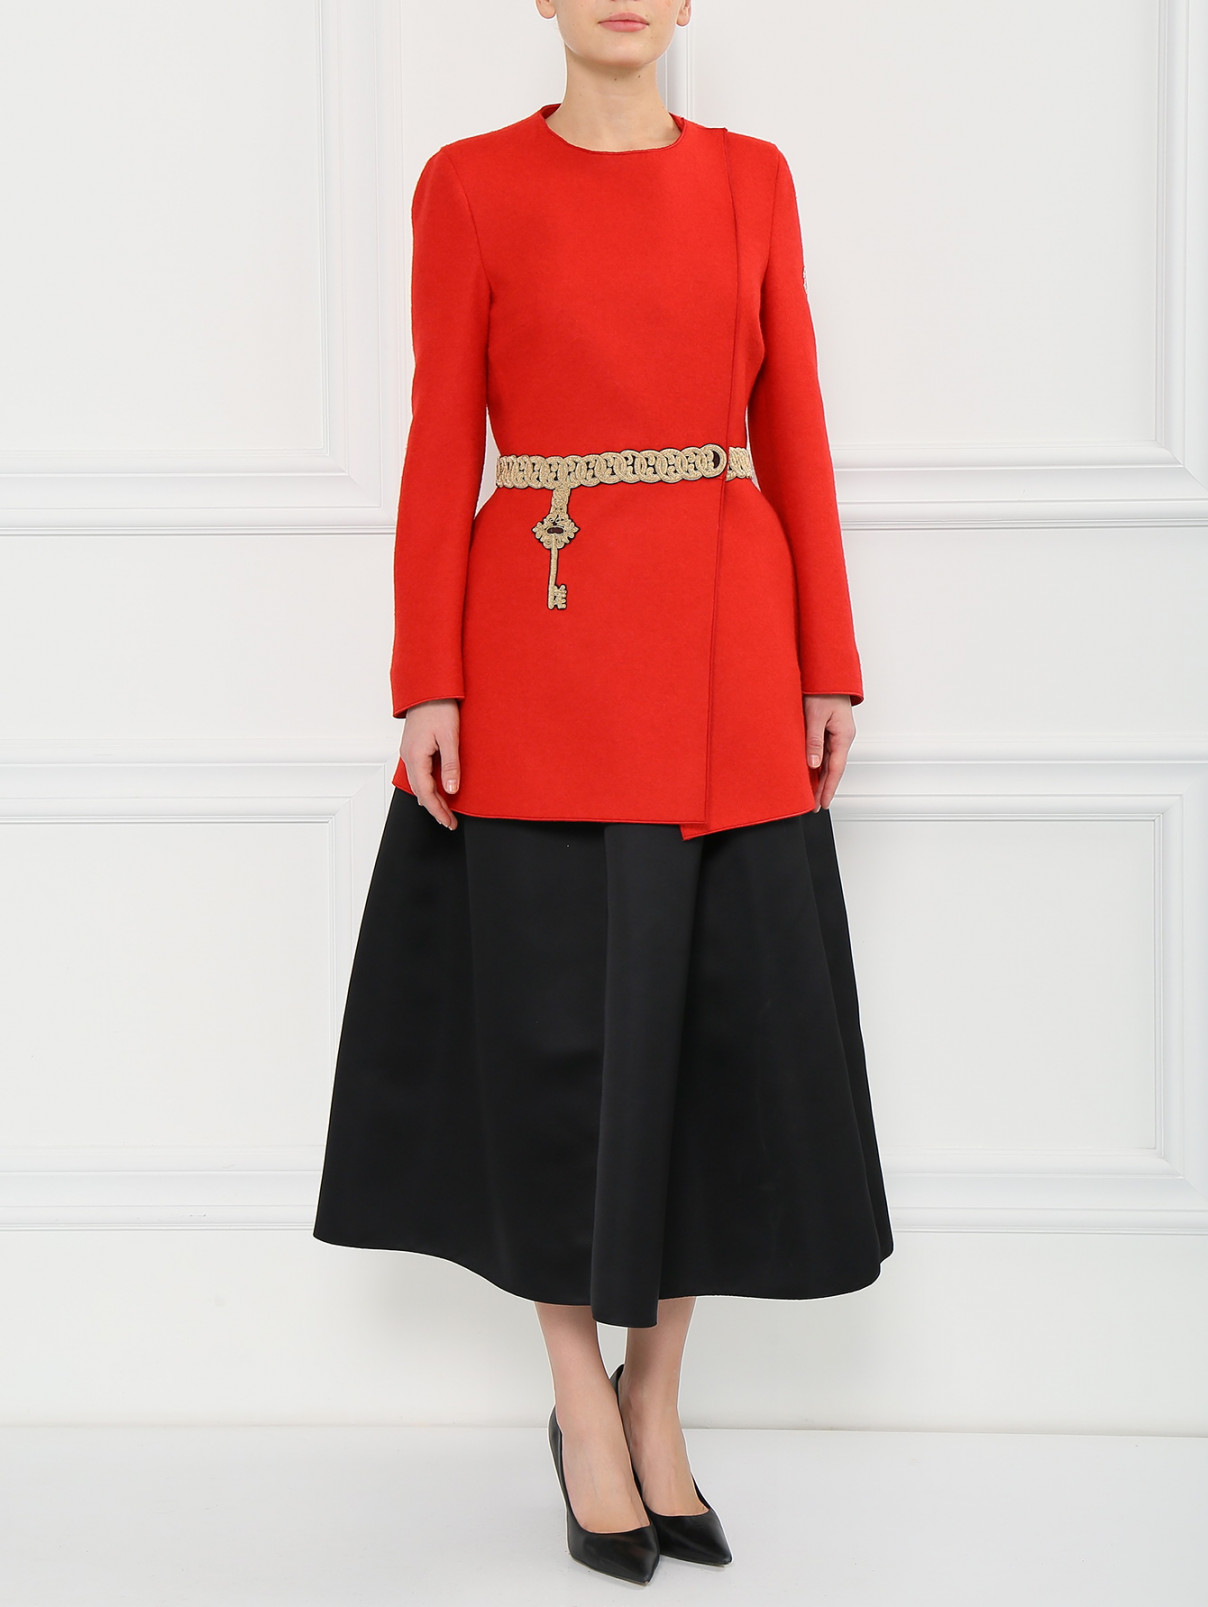 Пальто из смешанной шерсти Moncler  –  Модель Общий вид  – Цвет:  Красный